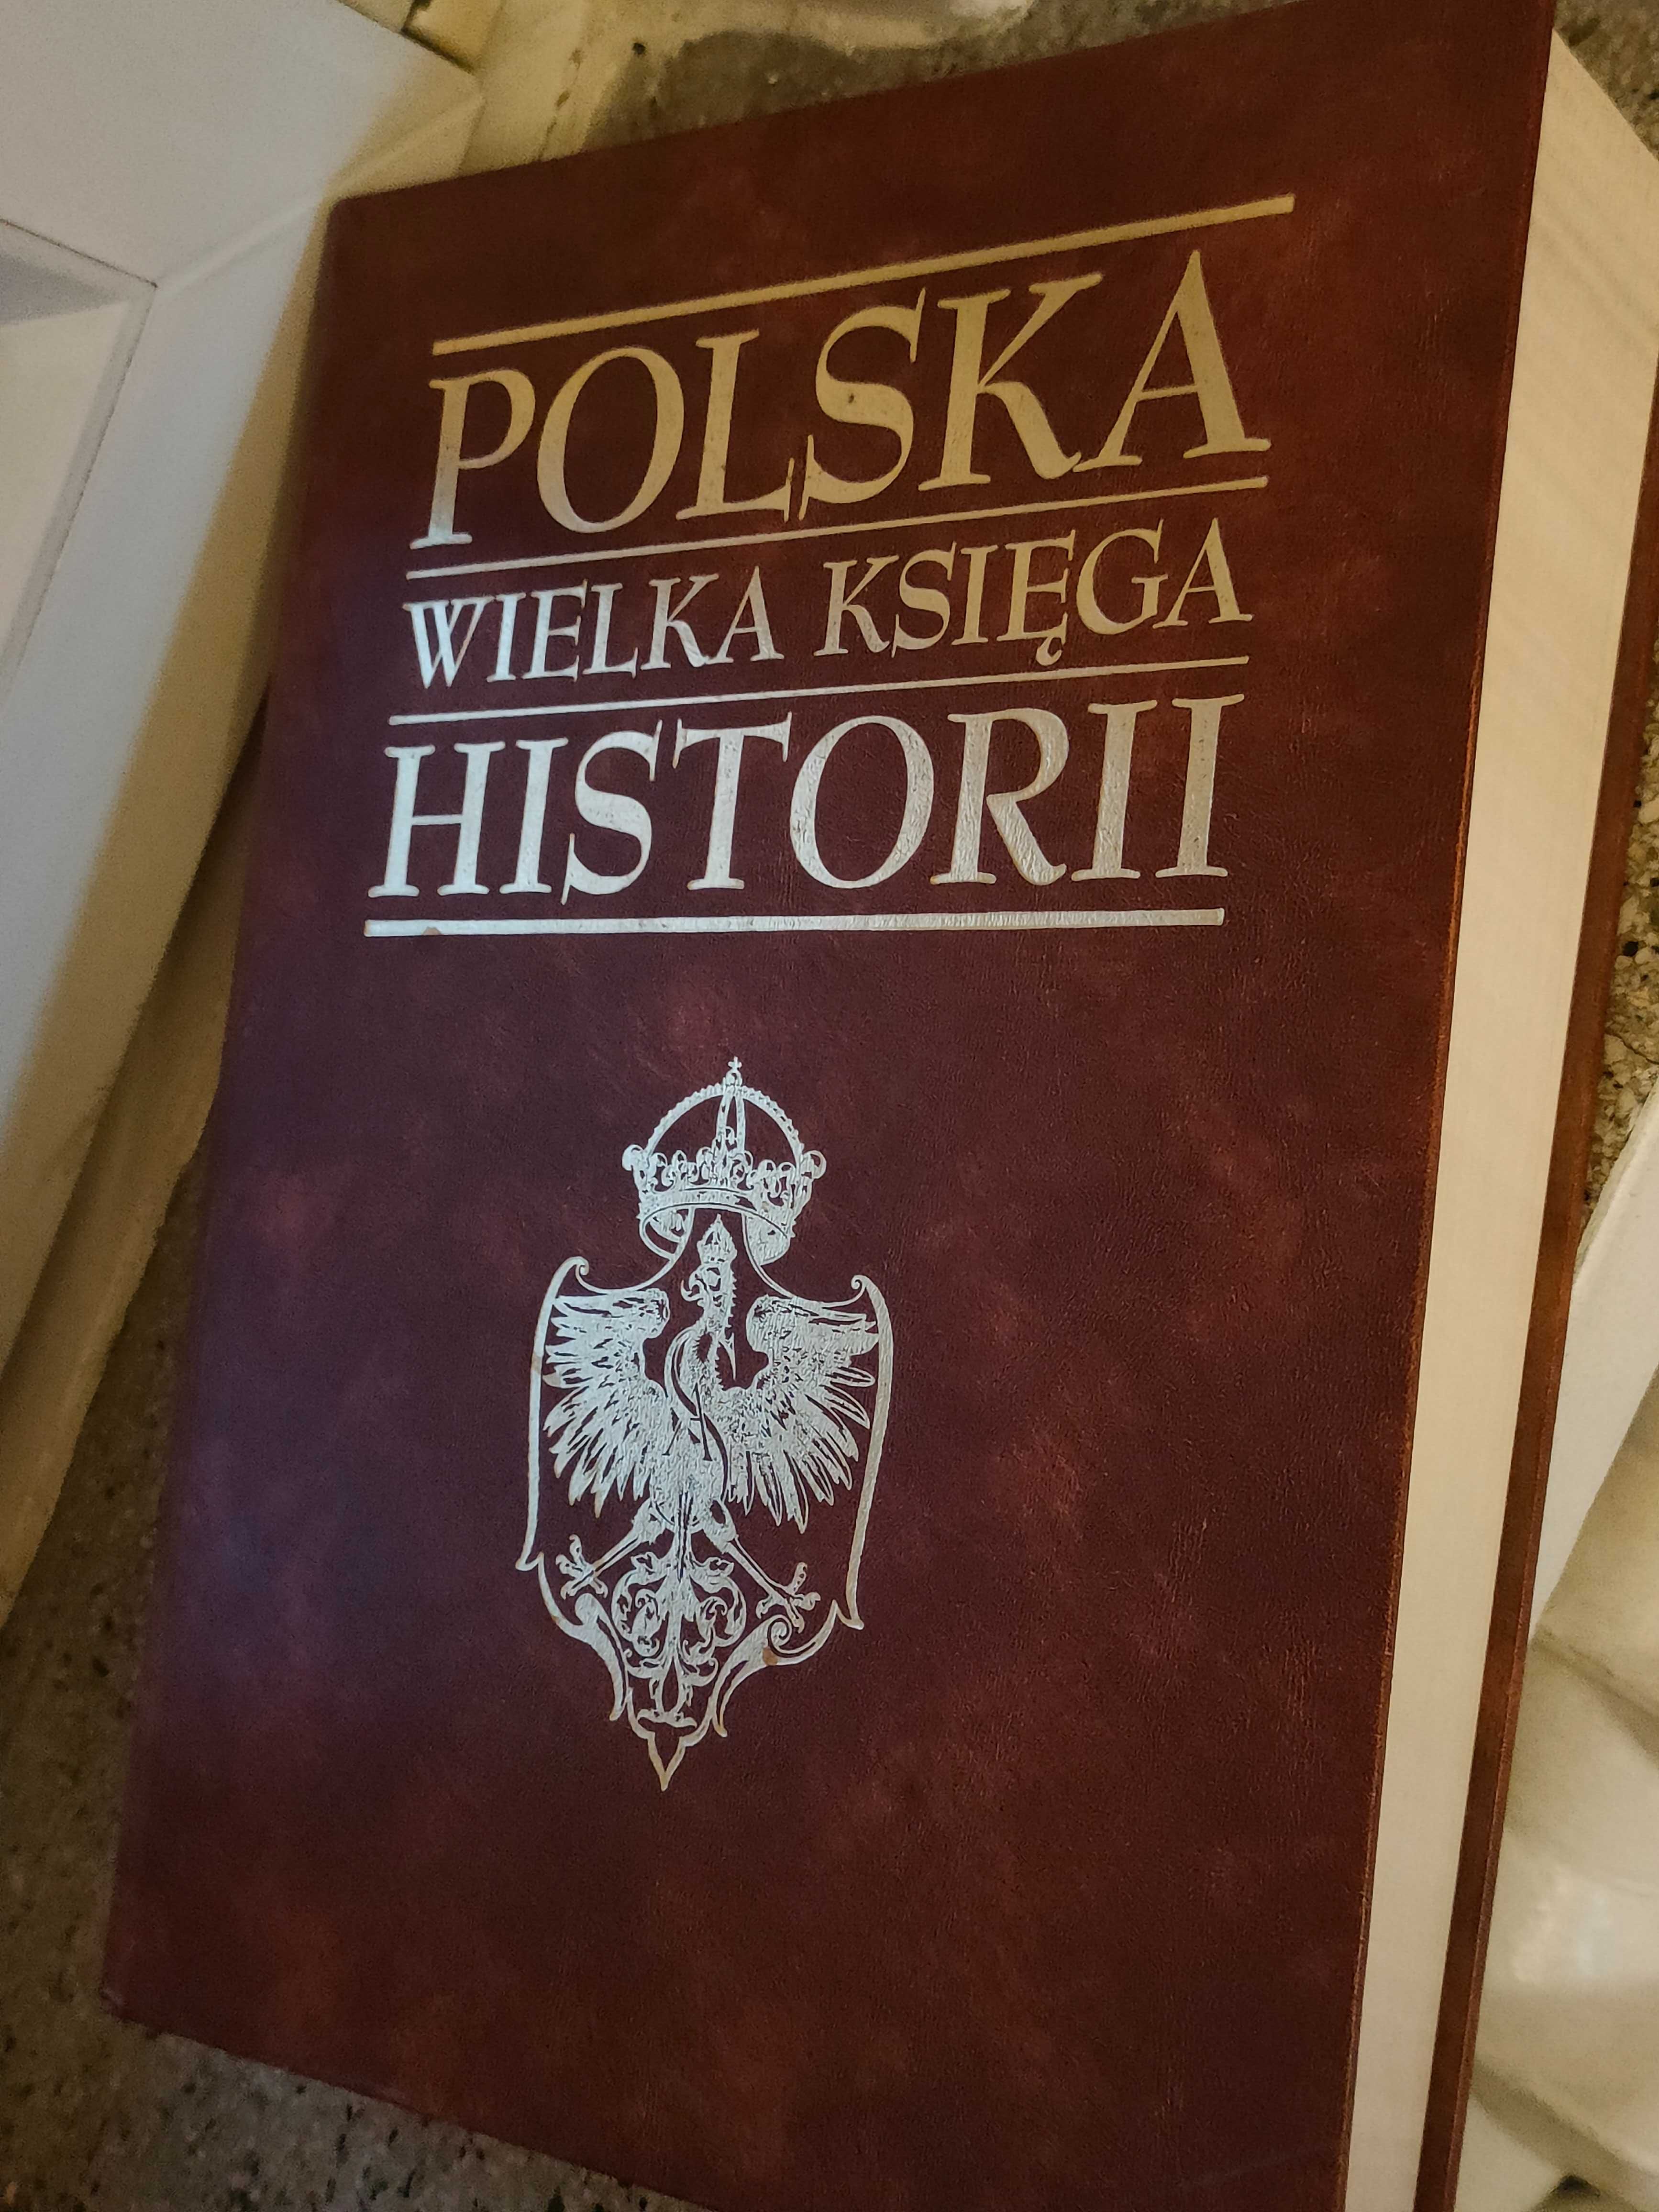 POLSKA WIELKA KSIĘGA HISTORII - używana, stan bardzo dobry